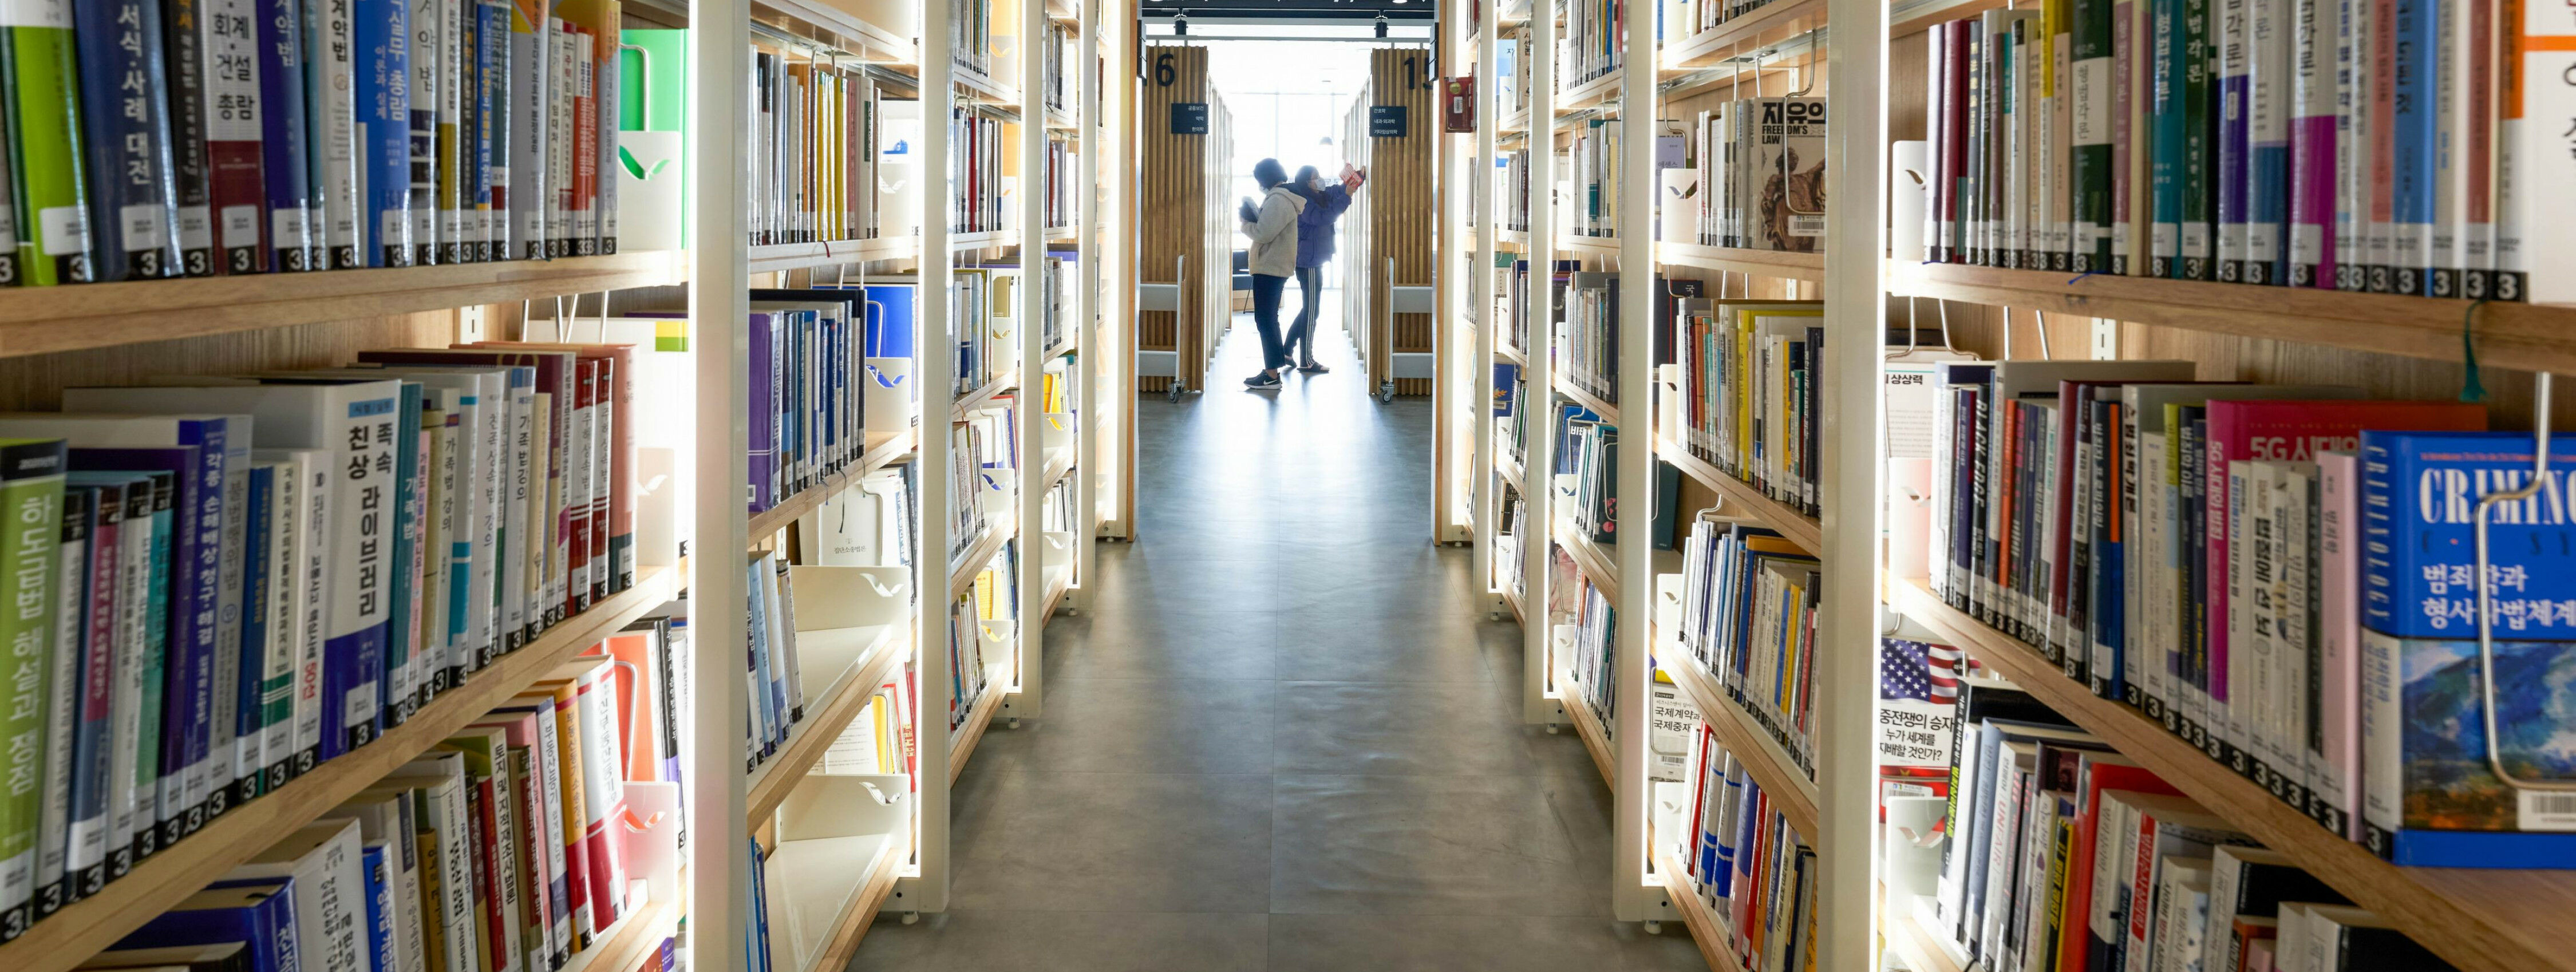 Bibliotheken als Dritter Ort